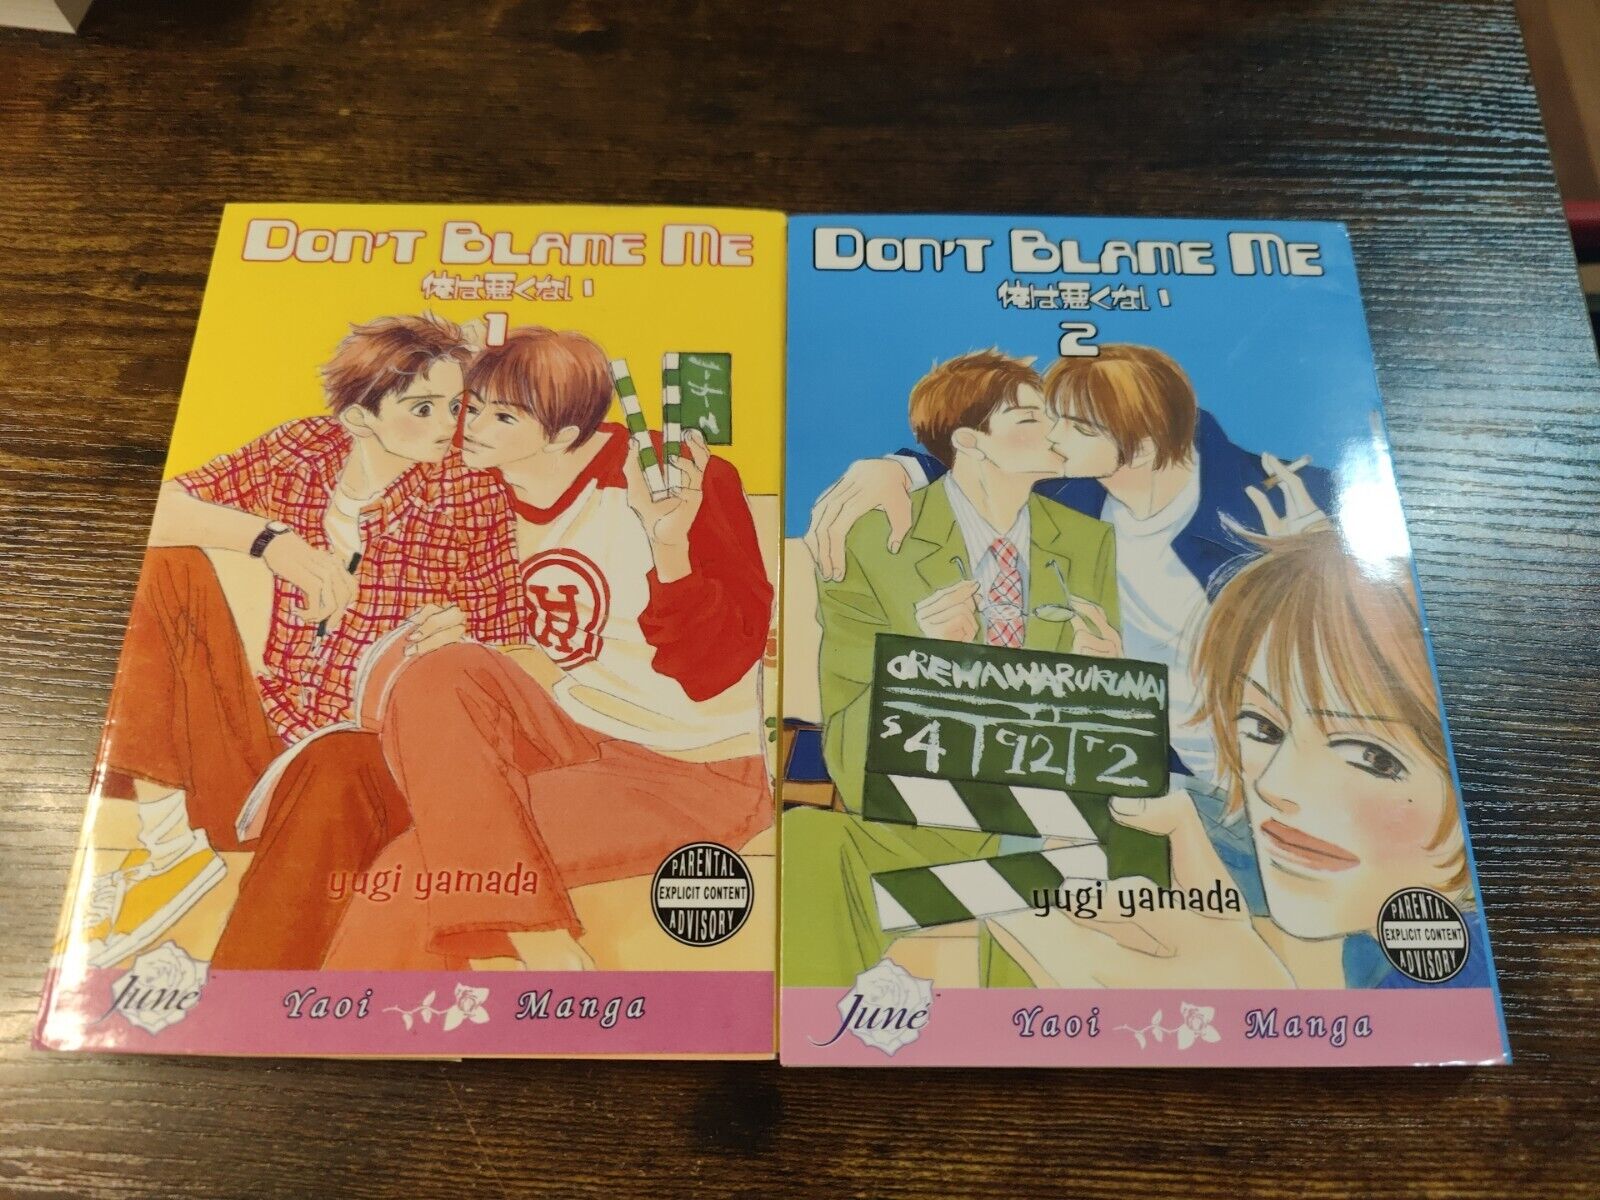 Don't Blame Me English Manga Volumes 1-2 By Yugi Yamada